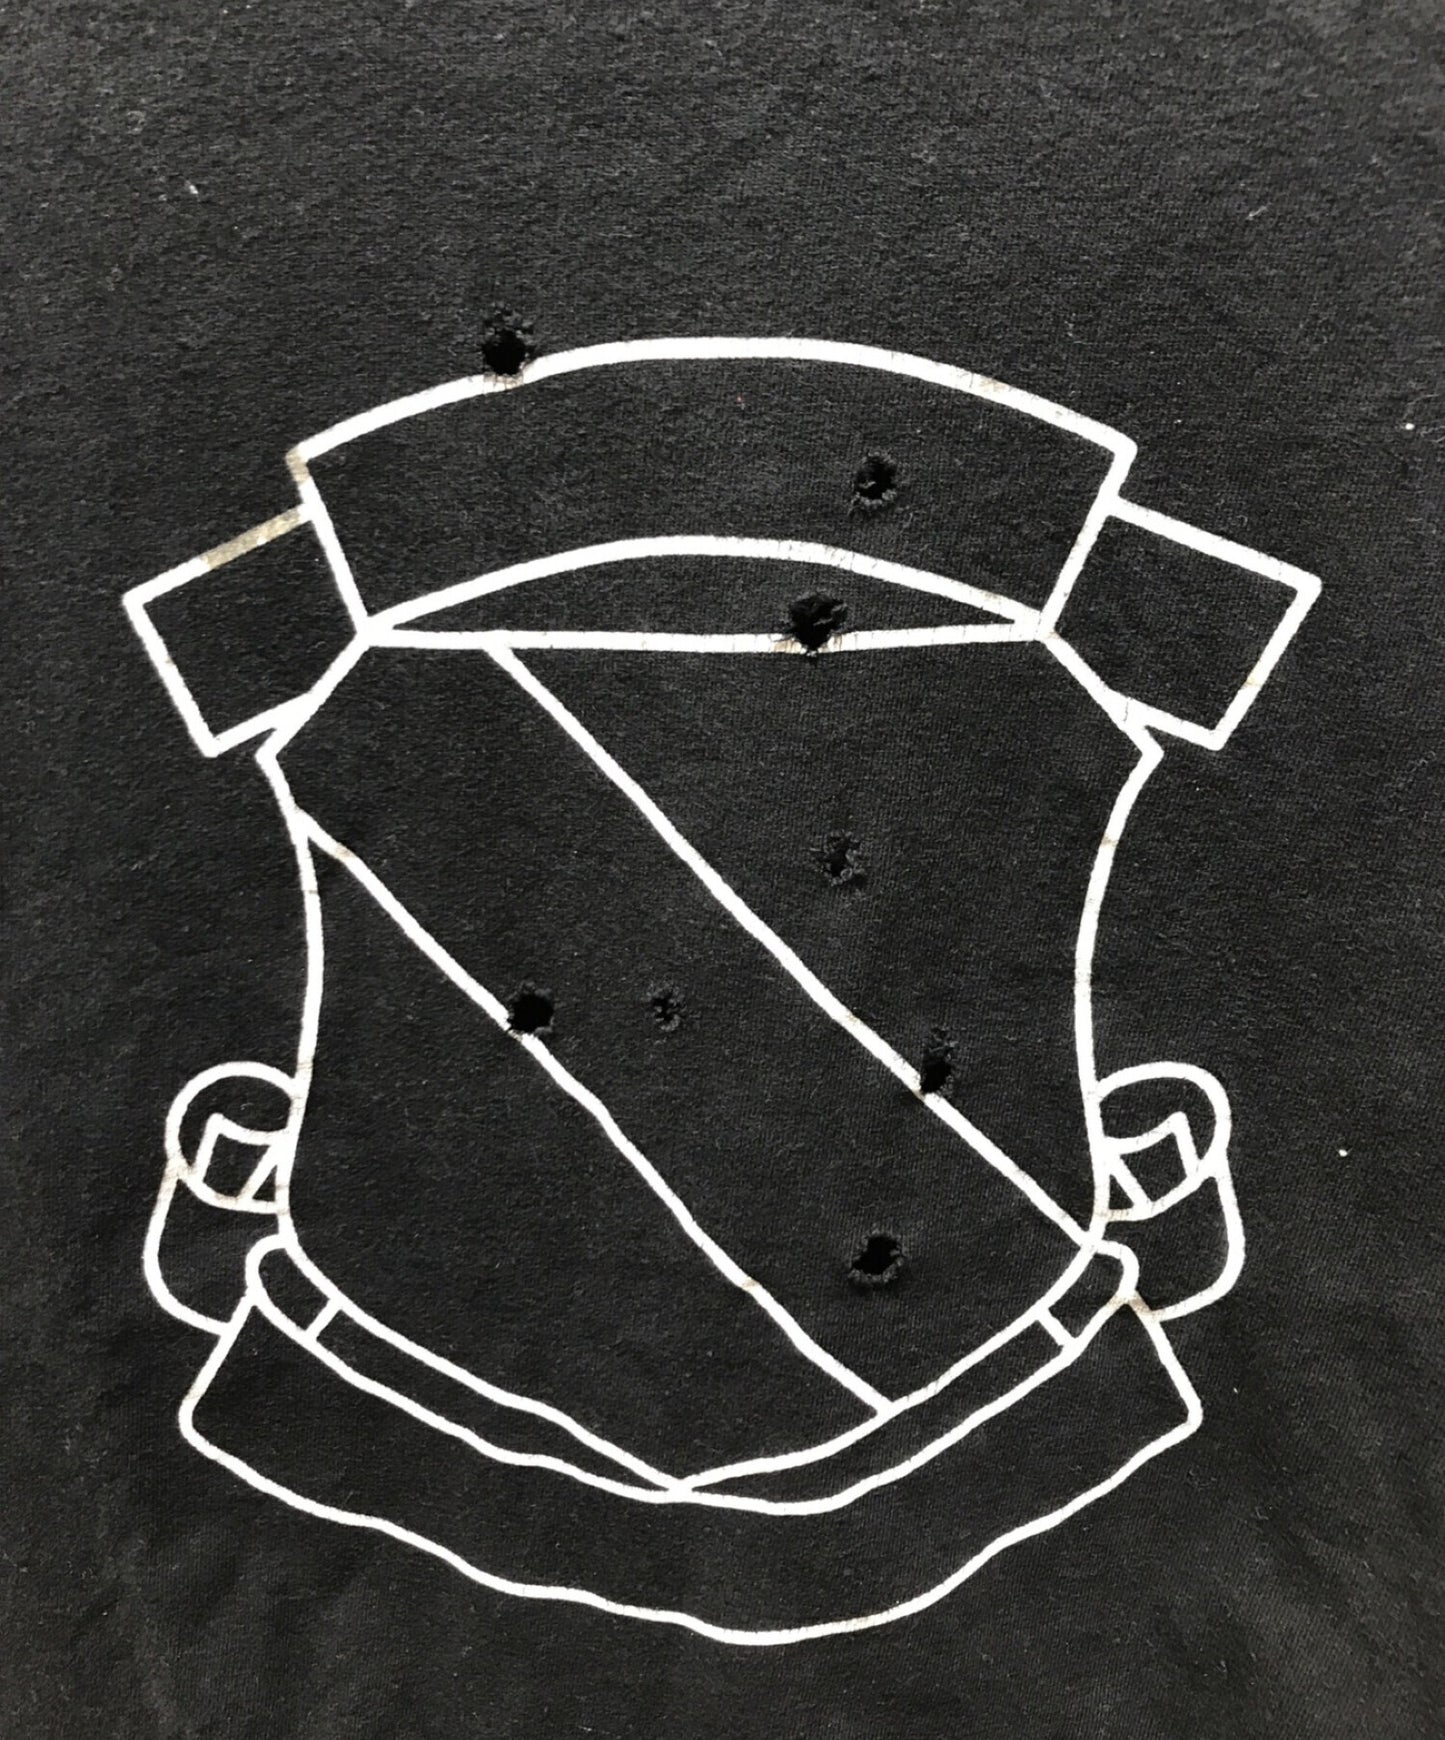 หมายเลข (n) ine emblem พิมพ์เสื้อยืด 00s เก็บถาวรความเสียหาย